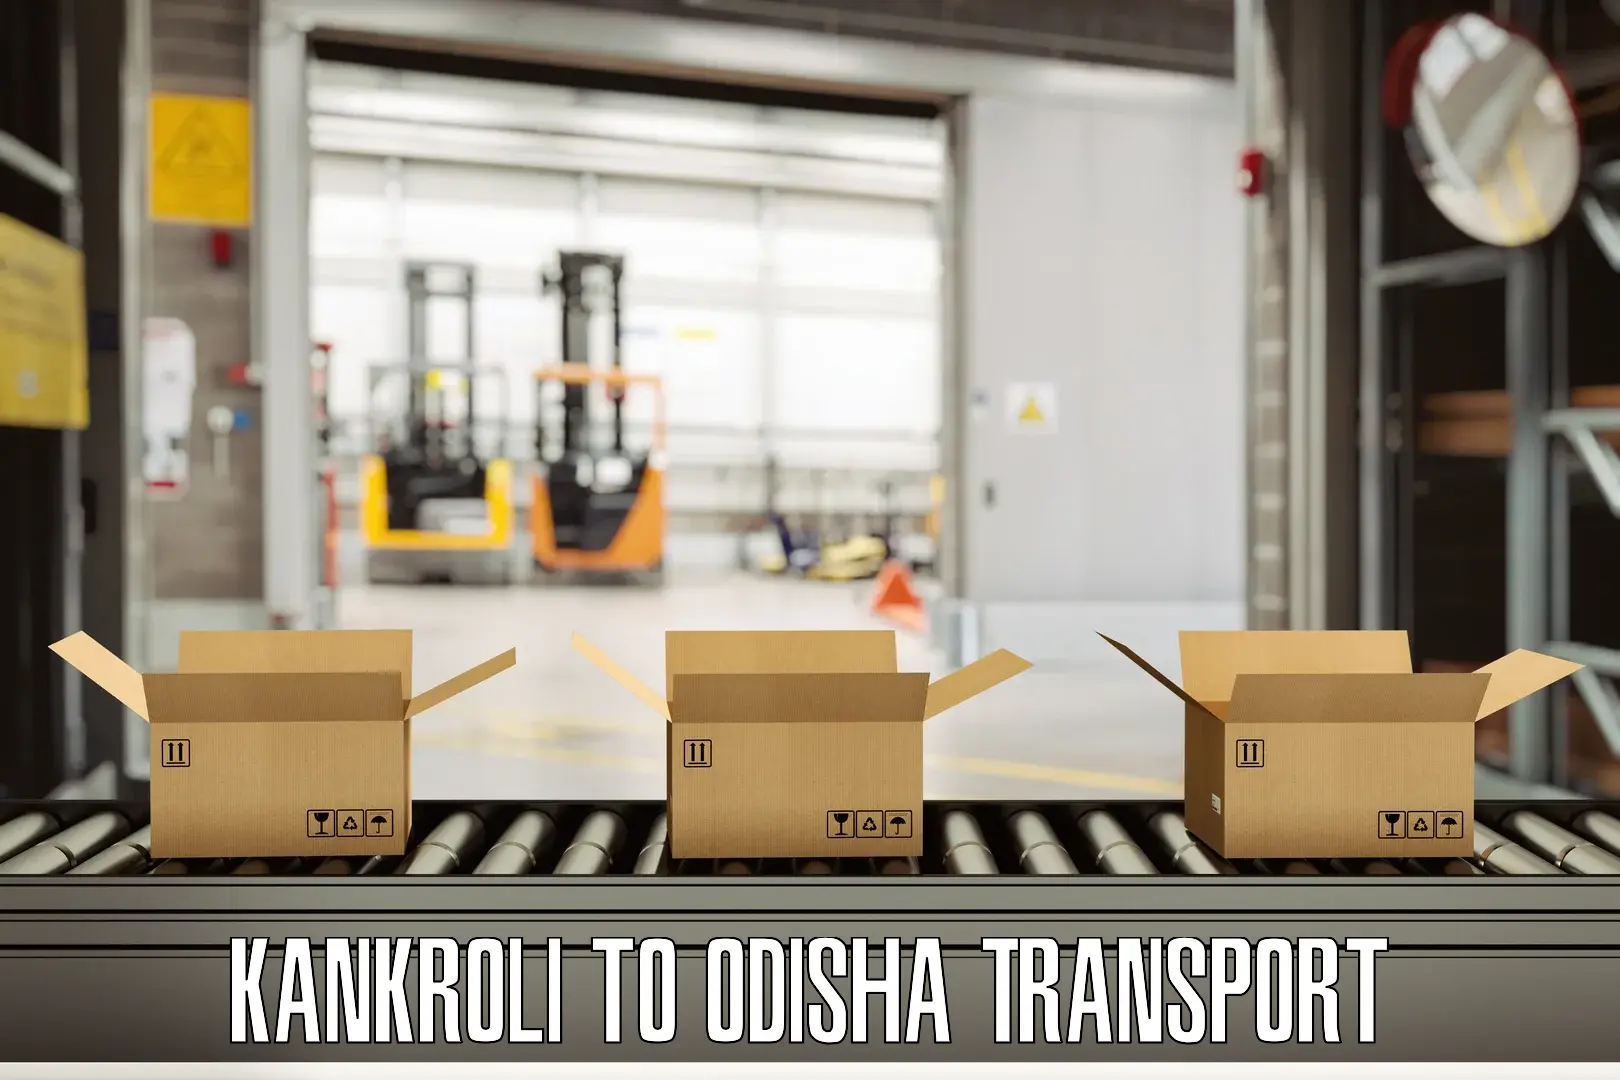 Transport in sharing Kankroli to Odisha